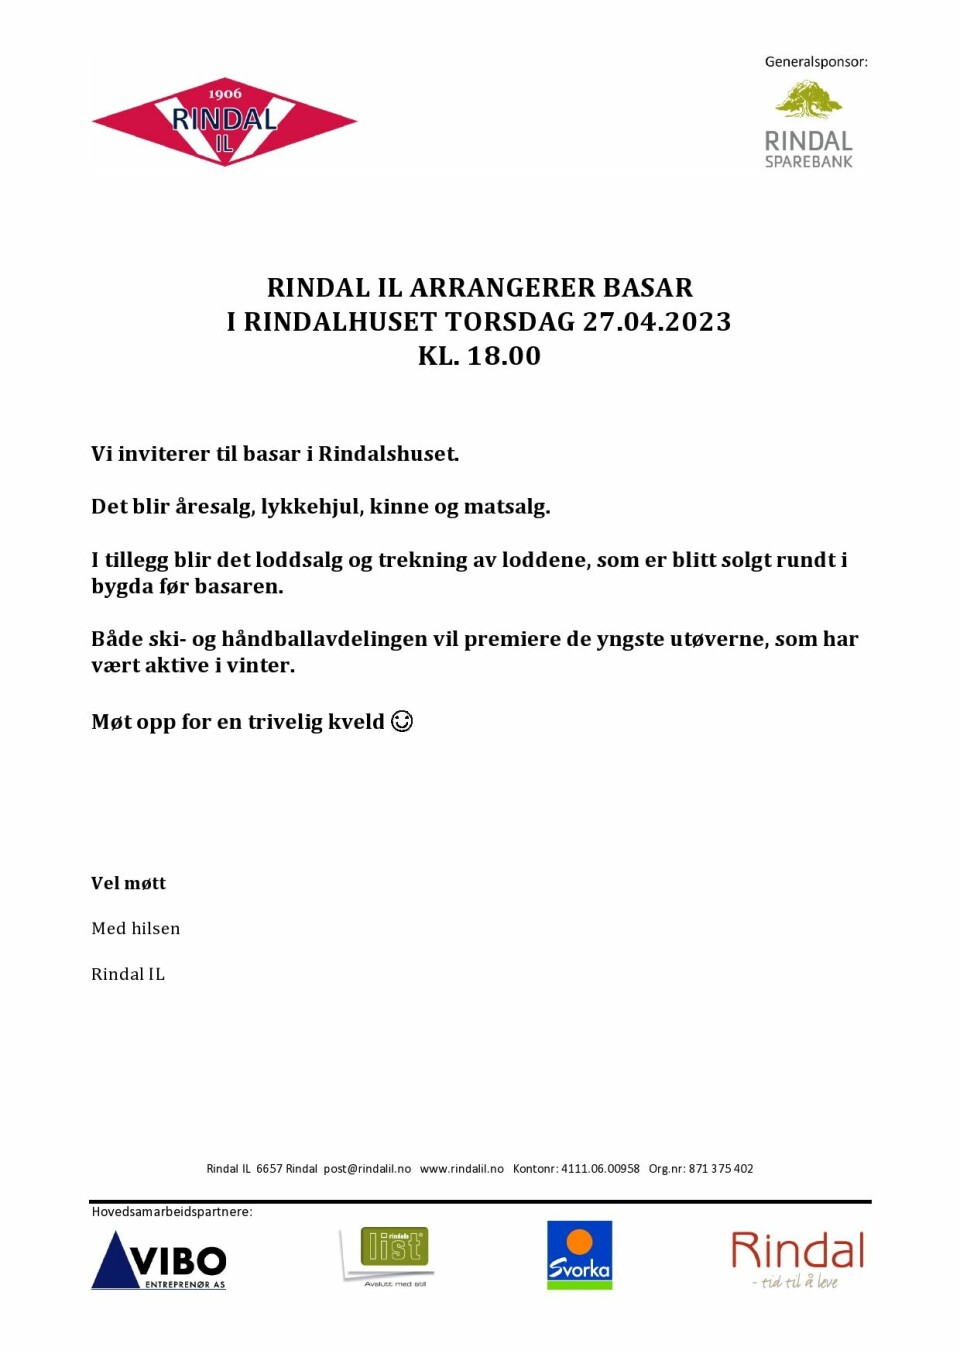 Plakat av invitasjon til basar fra Rindal IL